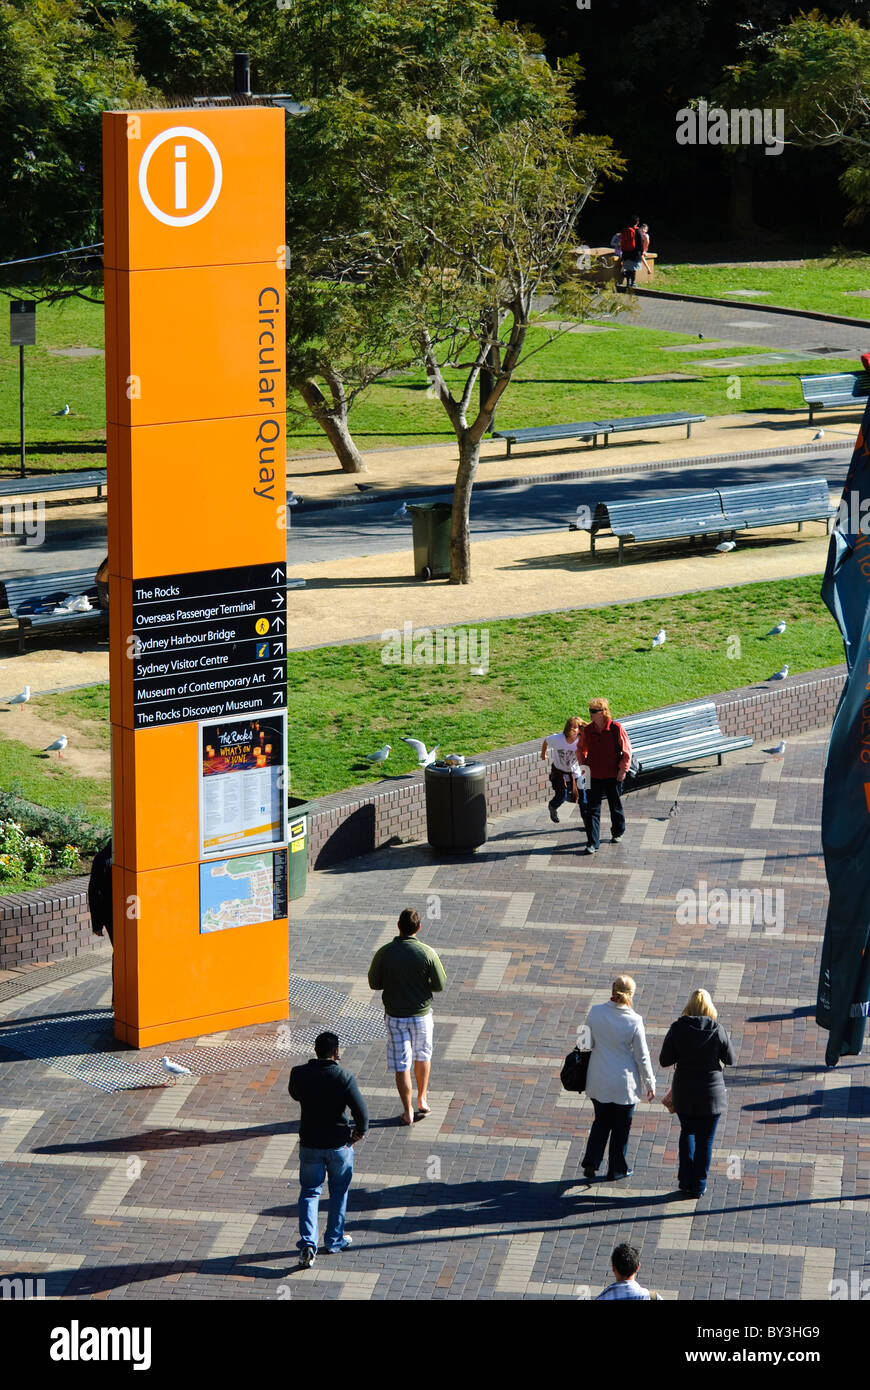 Les touristes passent devant un grand panneau informatif orange à Circular Quay, Sydney l'une des zones touristiques les plus populaires Banque D'Images